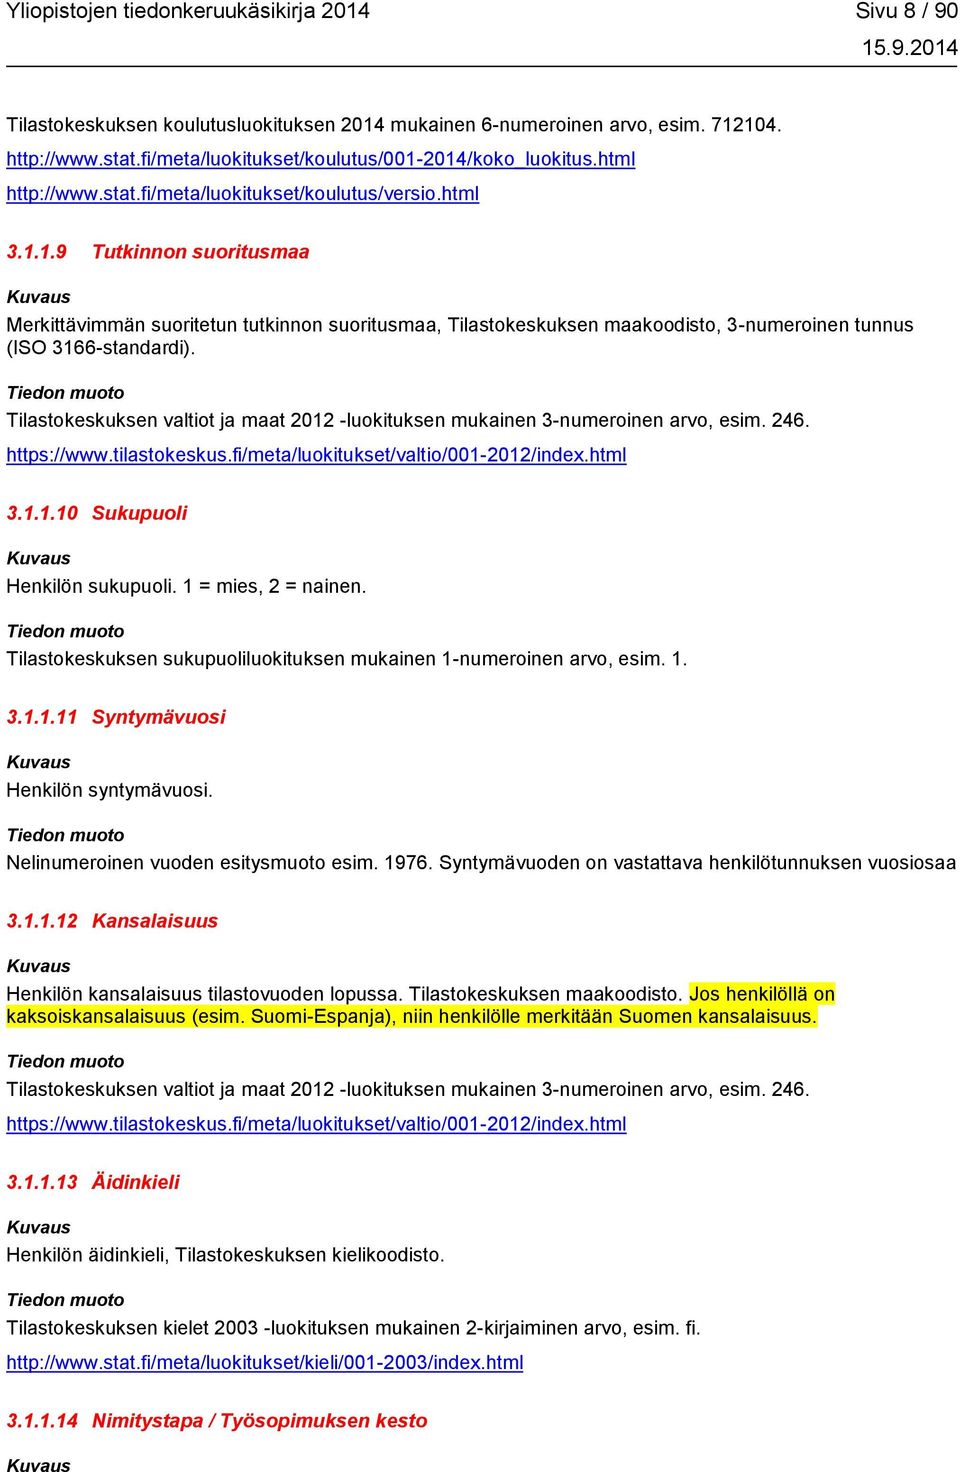 Tilastokeskuksen valtiot ja maat 2012 -luokituksen mukainen 3-numeroinen arvo, esim. 246. https://www.tilastokeskus.fi/meta/luokitukset/valtio/001-2012/index.html 3.1.1.10 Sukupuoli Henkilön sukupuoli.